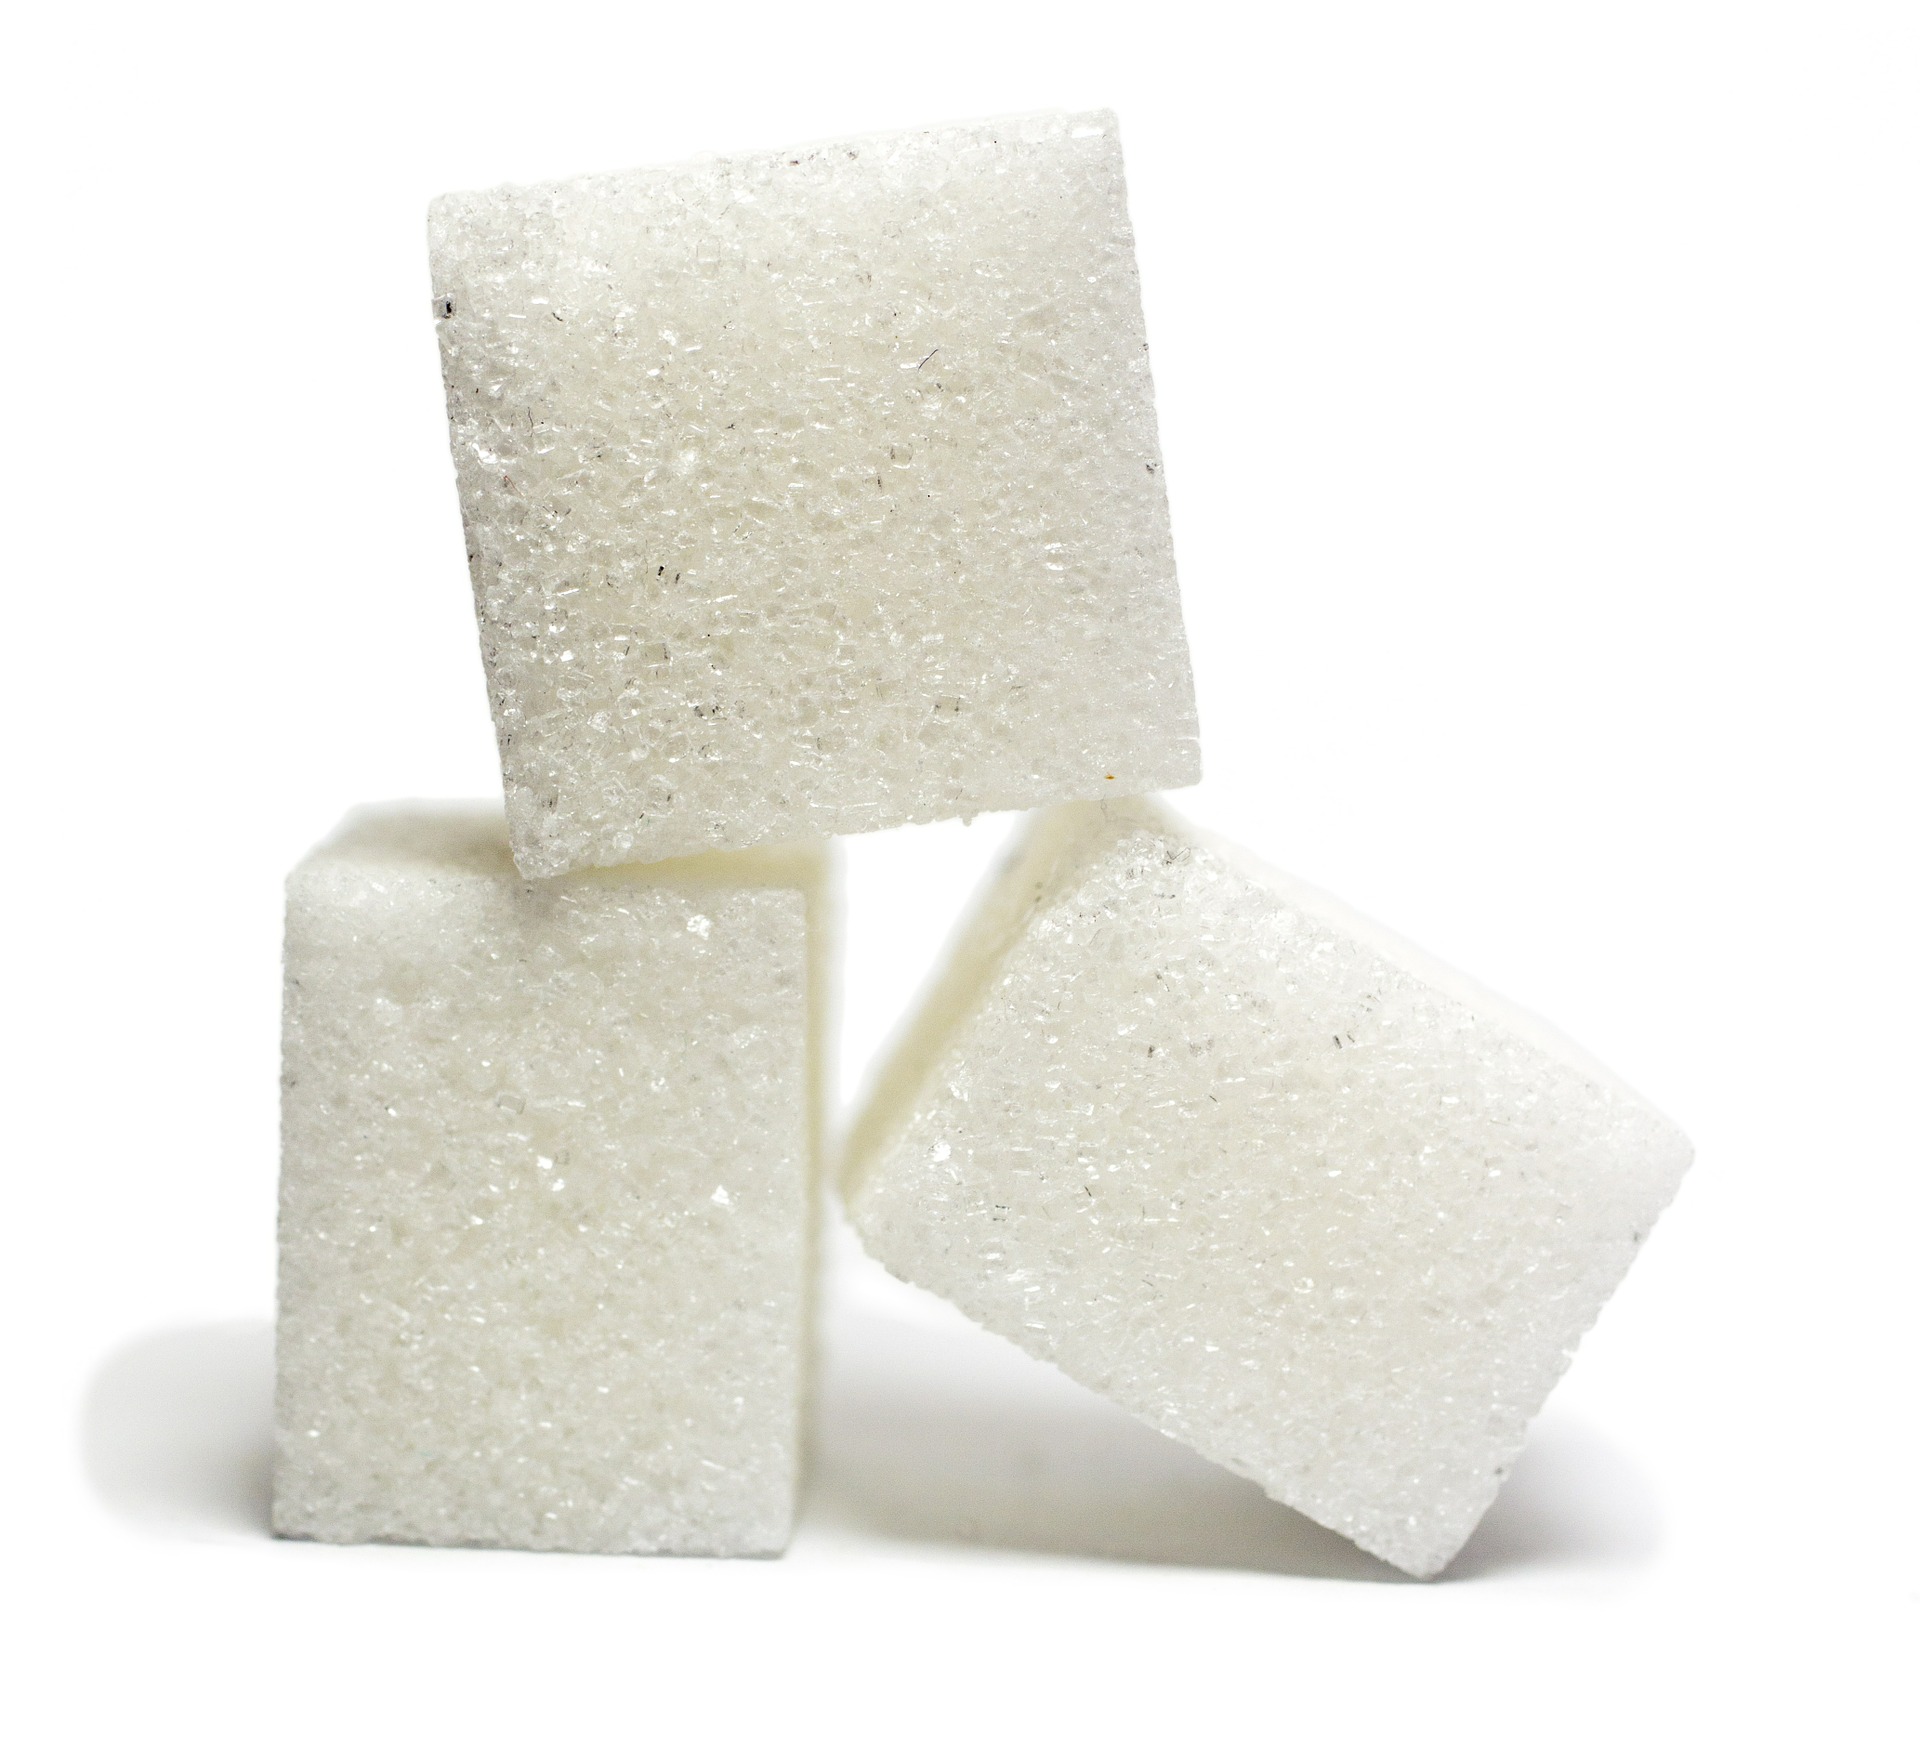 Preços do açúcar cristal iniciam mês em queda